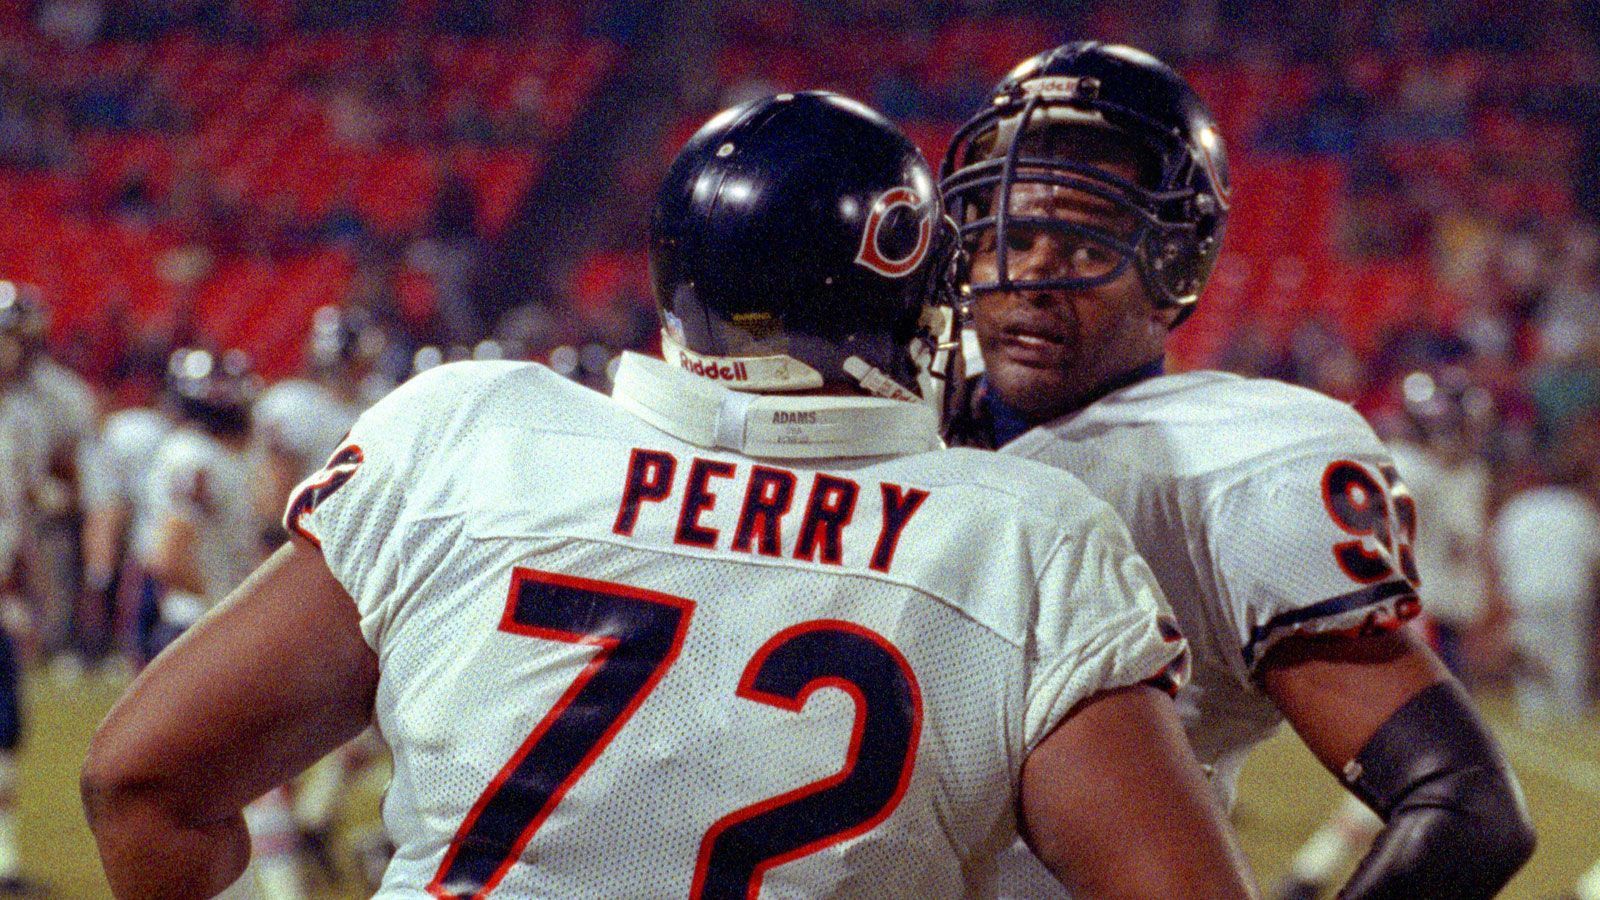 
                <strong>Platz 5: William "The Refrigerator" Perry</strong><br>
                William Perry war durch seine massige Erscheinung quasi wie geschaffen für den American Football. Dazu war er trotz 152 Kilogramm Körpergewicht in der Lage, die 100 Meter unter 12 Sekunden zu laufen. Als Fullback war Perry dadurch sehr erfolgreich, bei "4th and Inches" das nächste First Down zu holen. Zwischen 1985 und 1993 lief er für die Chicago Bears auf, mit denen er den Super Bowl gewann. Seine Karriere beendete er 1994 bei den Philadelphia Eagles. In die NFL Europe kam Perry 1996 nach seiner aktiven Karriere, die Saison bei den London Monarchs war allerdings eher unscheinbar. 
              